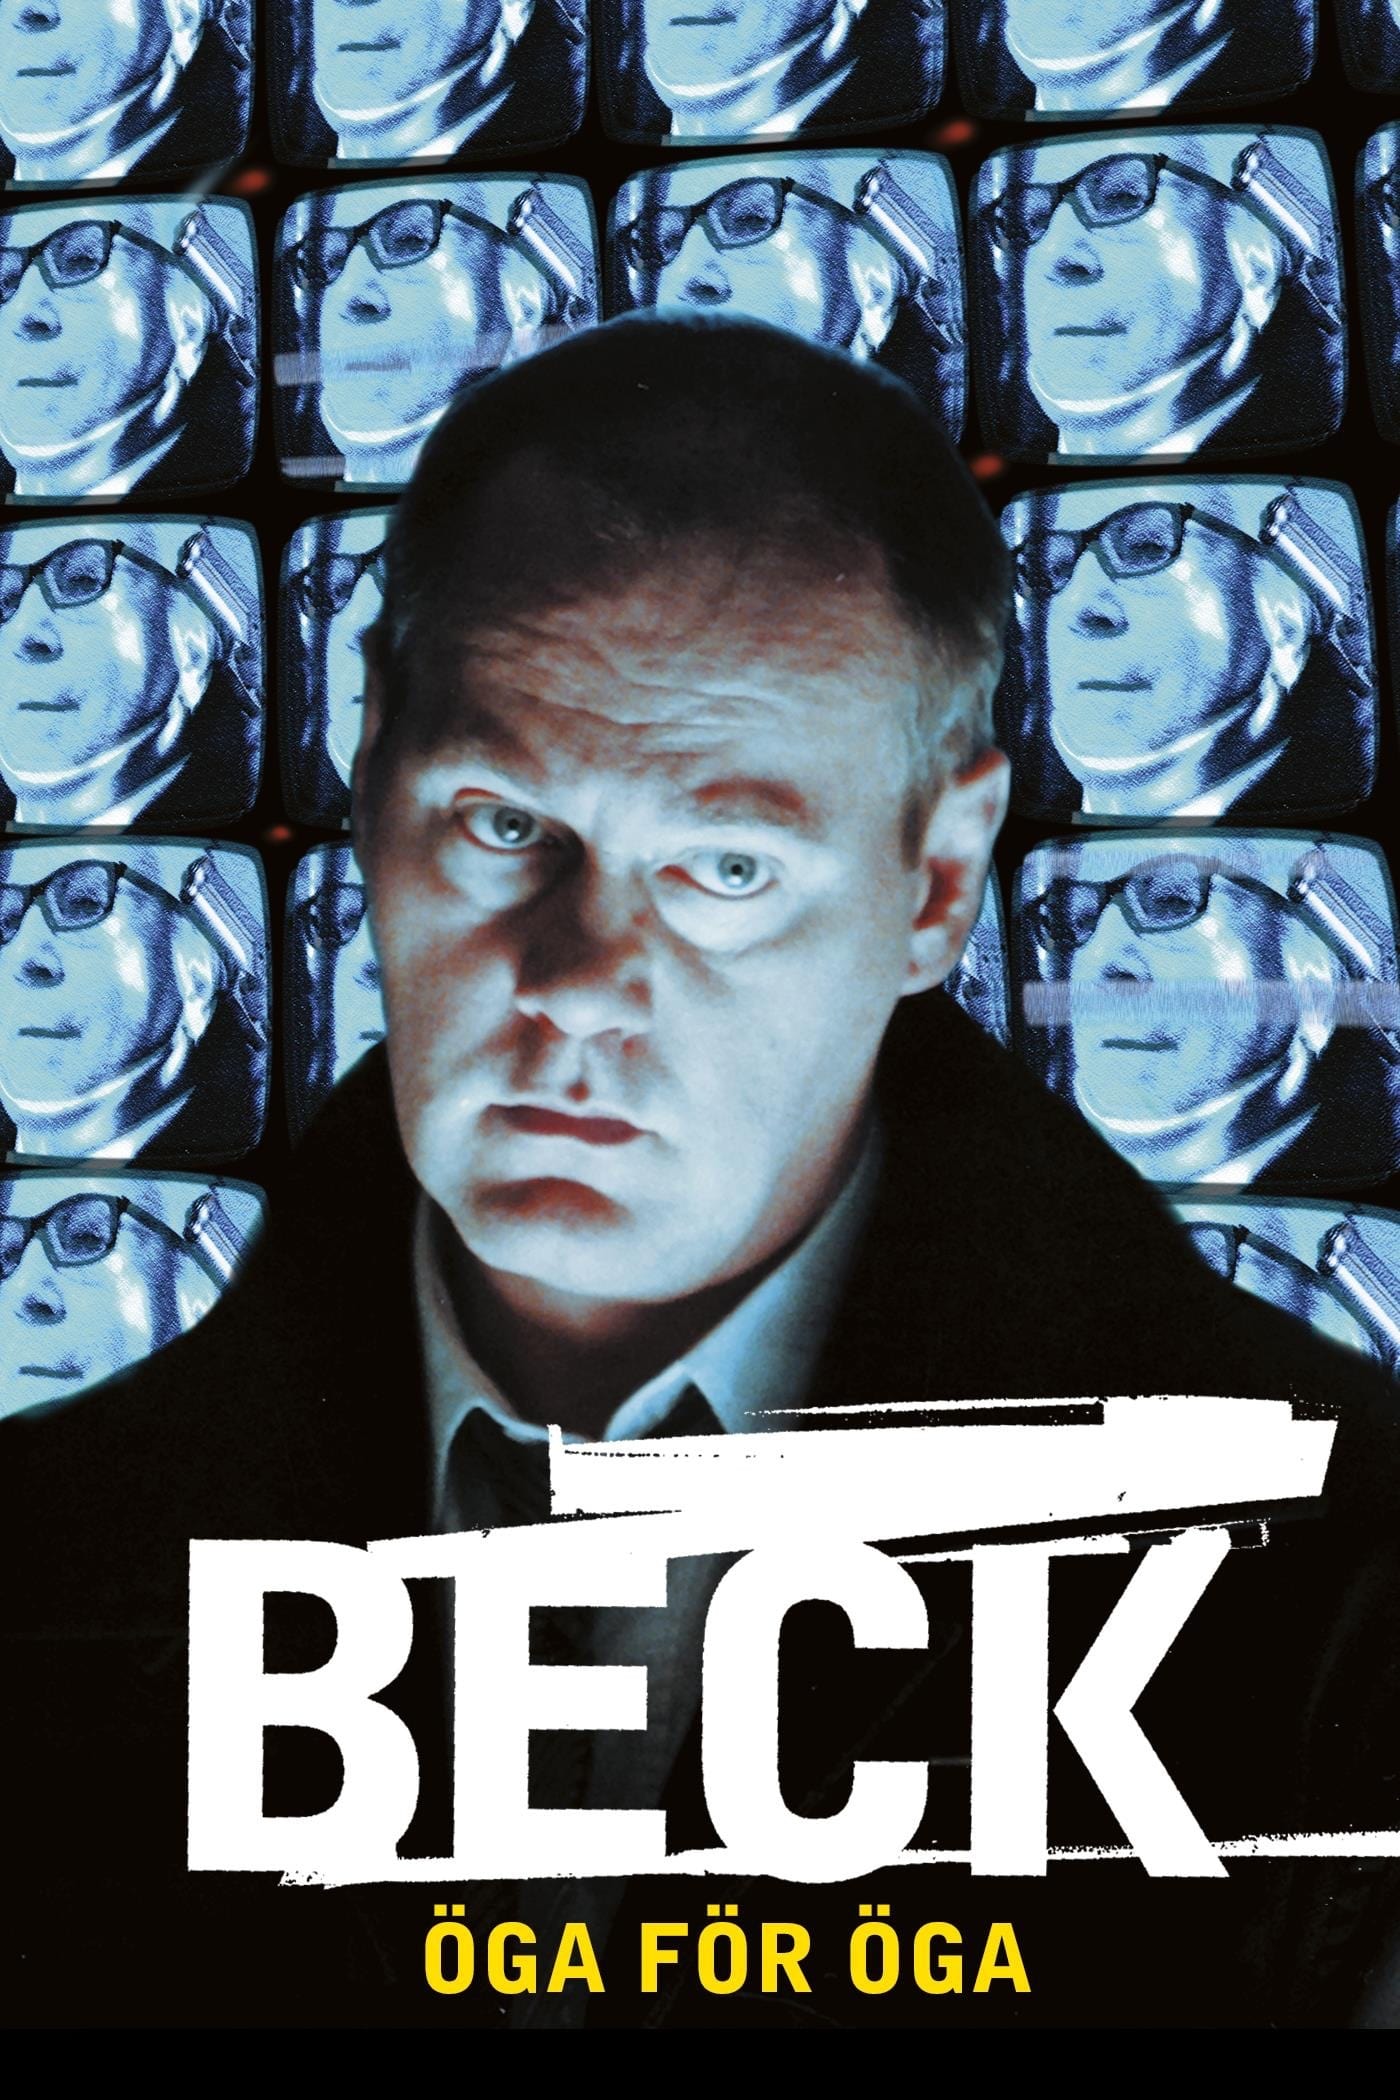 Beck 04 - Eye for an Eye